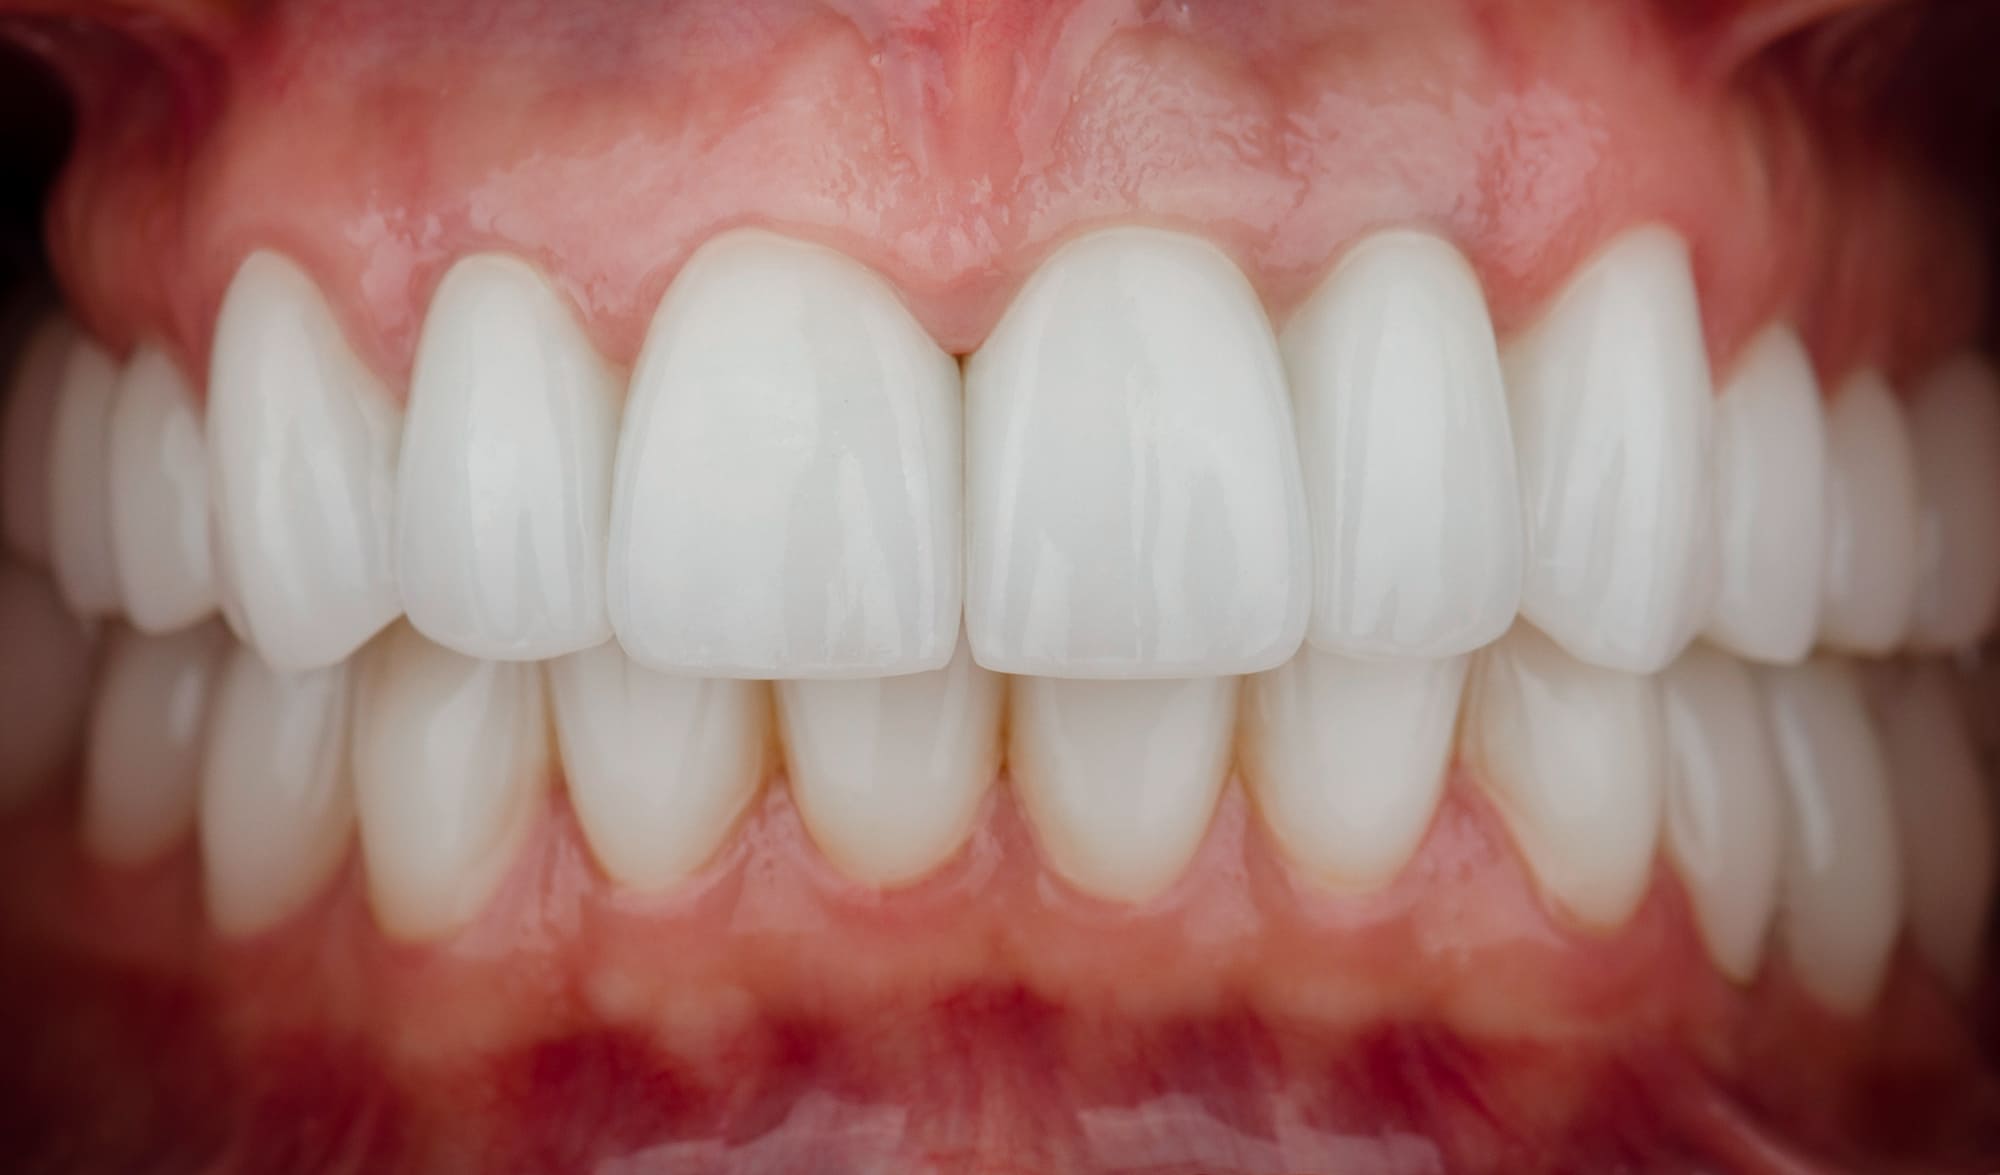 После обсуждения лечения с пациенткой,  принято решение о санации нуждающихся зубов, имплантации зубов 35,37 и протезировании циркониевыми коронками.